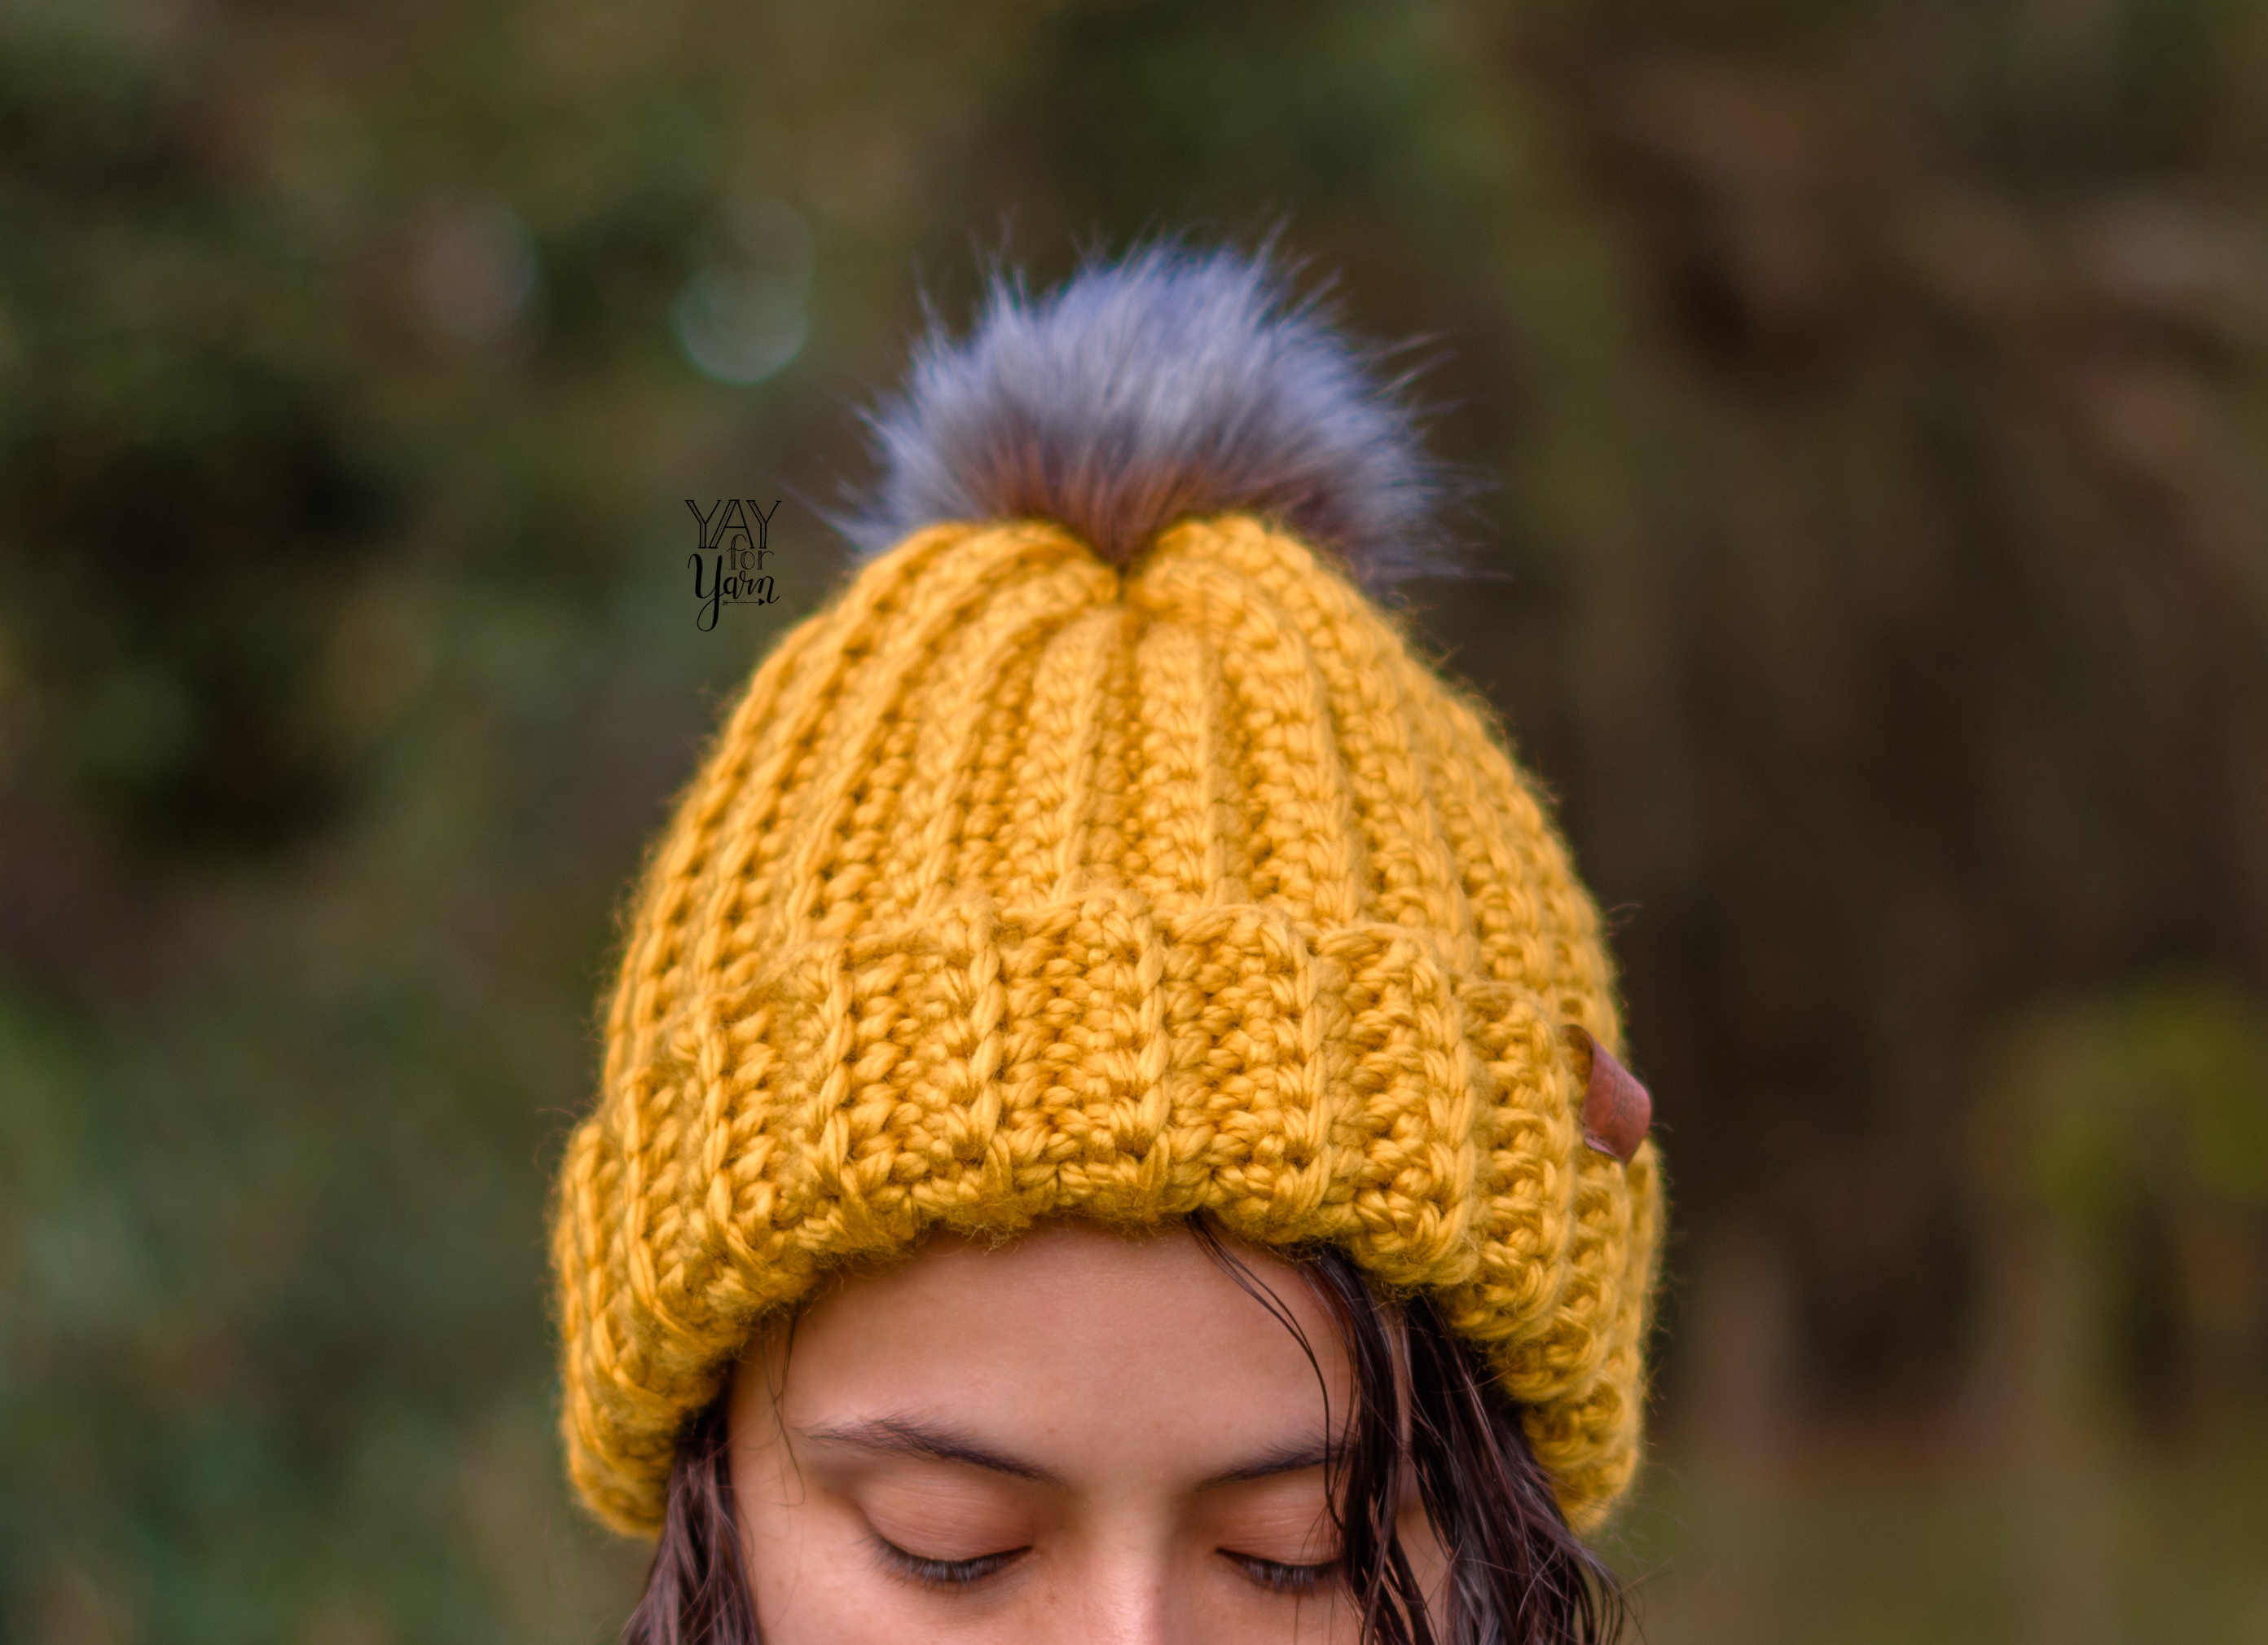 easiest-crochet-hat-pattern-yay-for-yarn